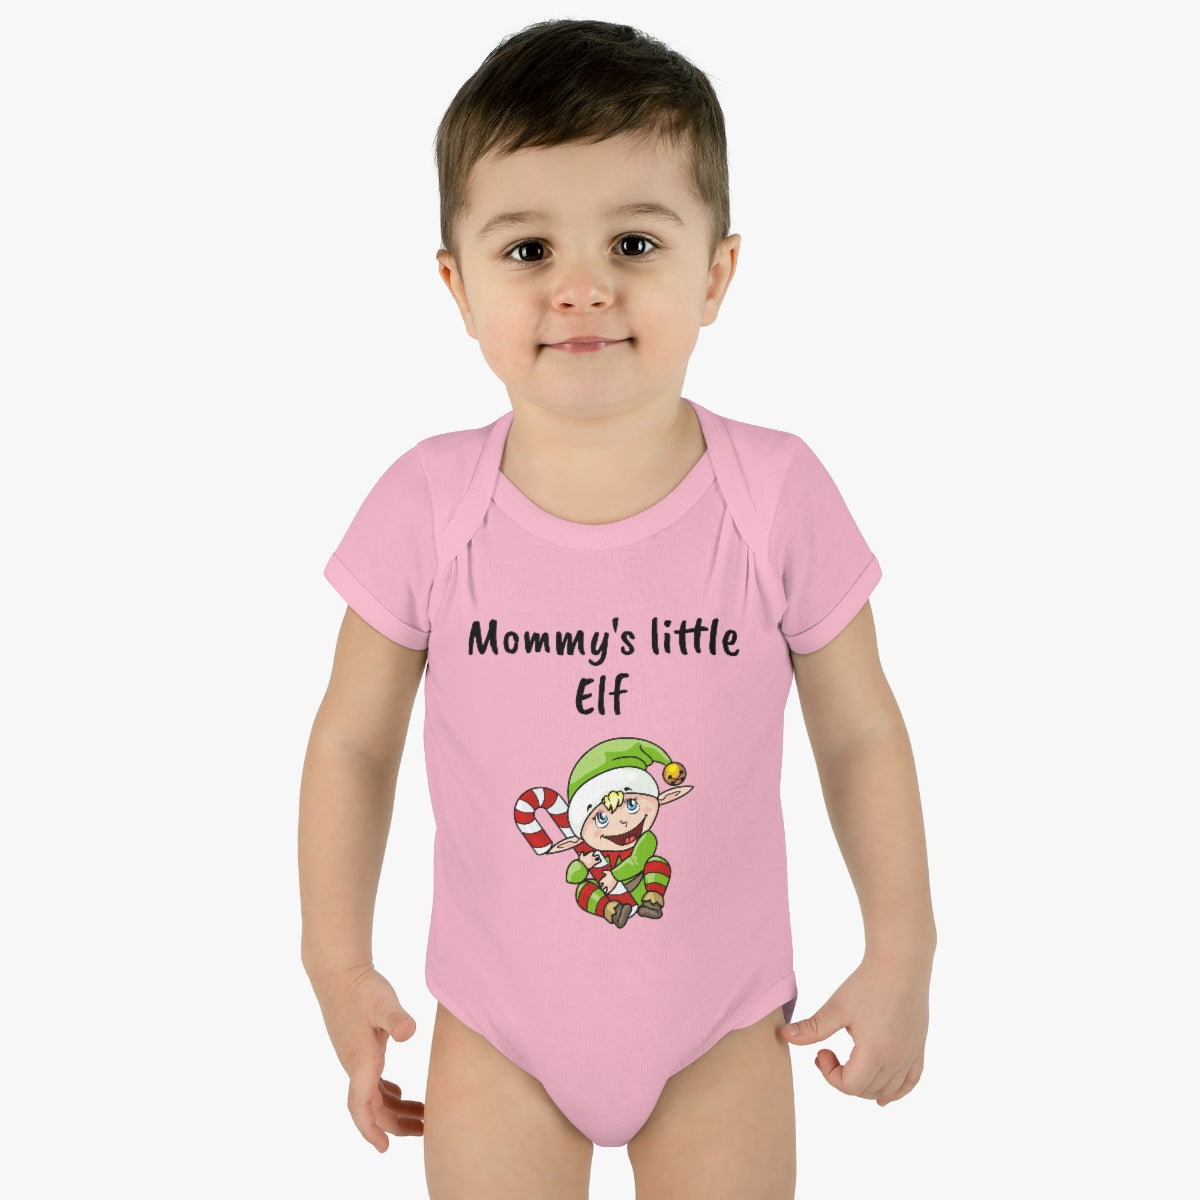 Mommy's little Elf - Infant Baby Rib Bodysuit - CrazyTomTShirts